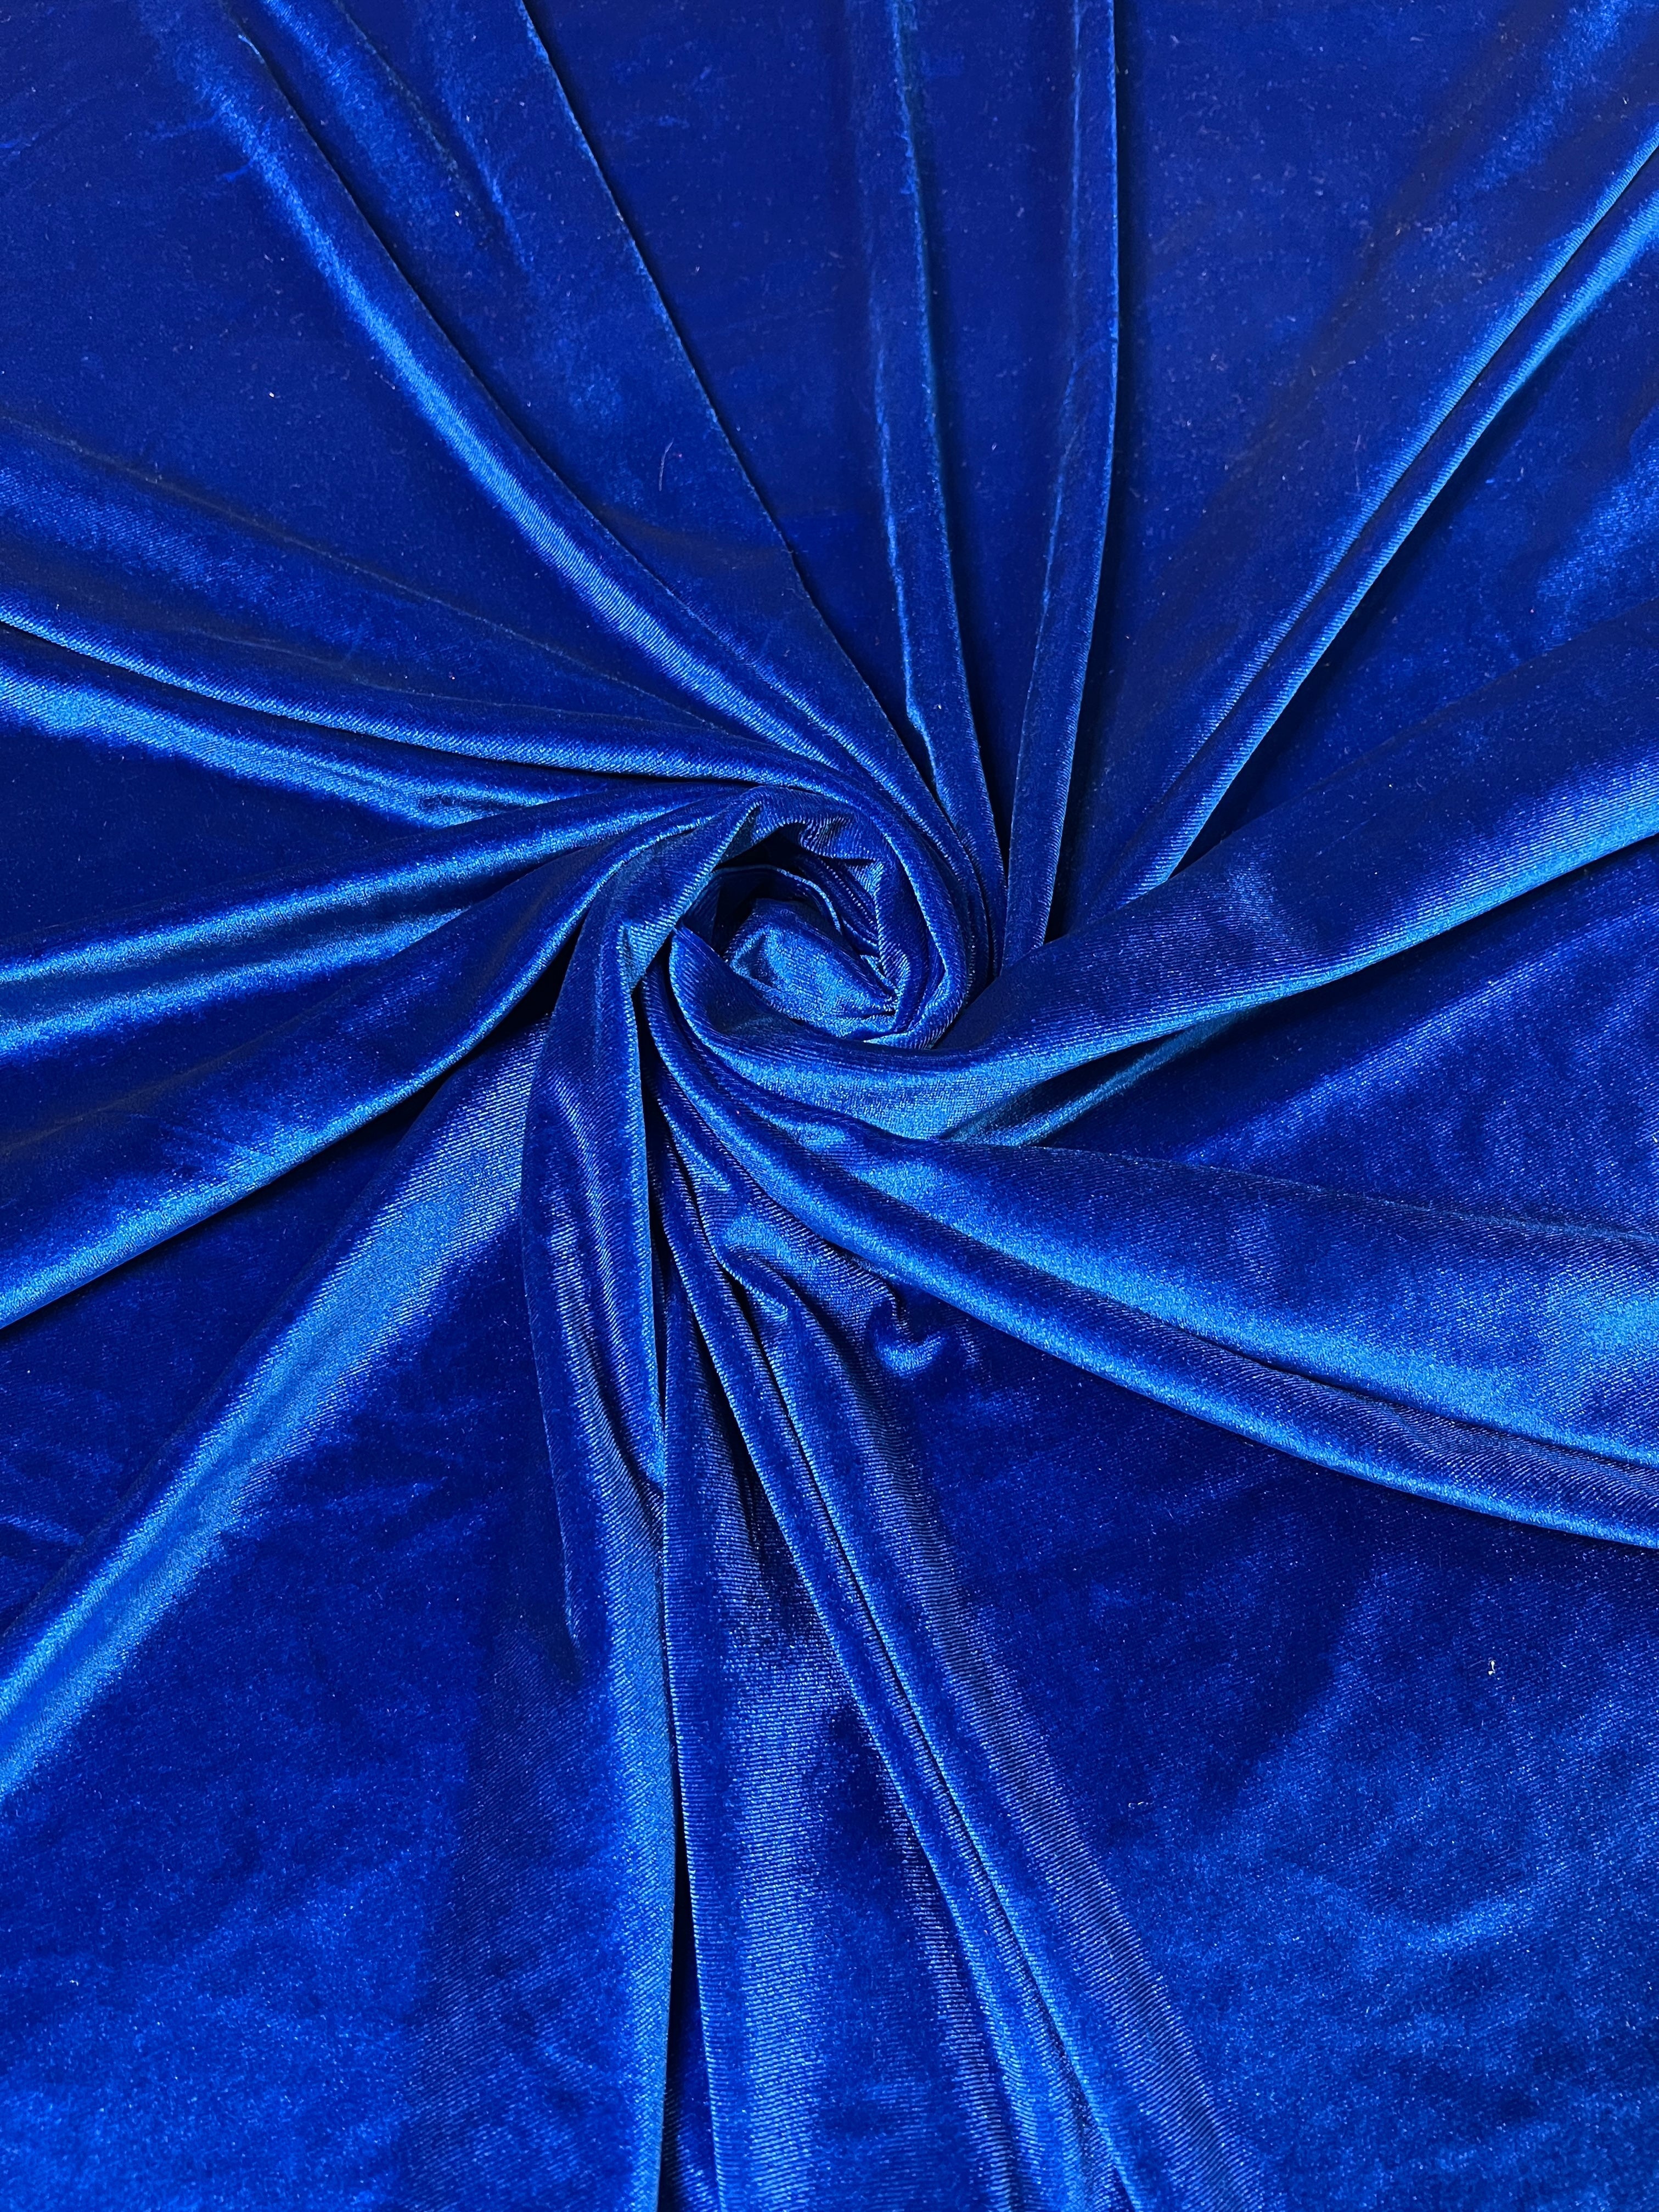 Dressmaking Fabric, Delilah Luxury Silk & Viscose Velvet - Royal Blue